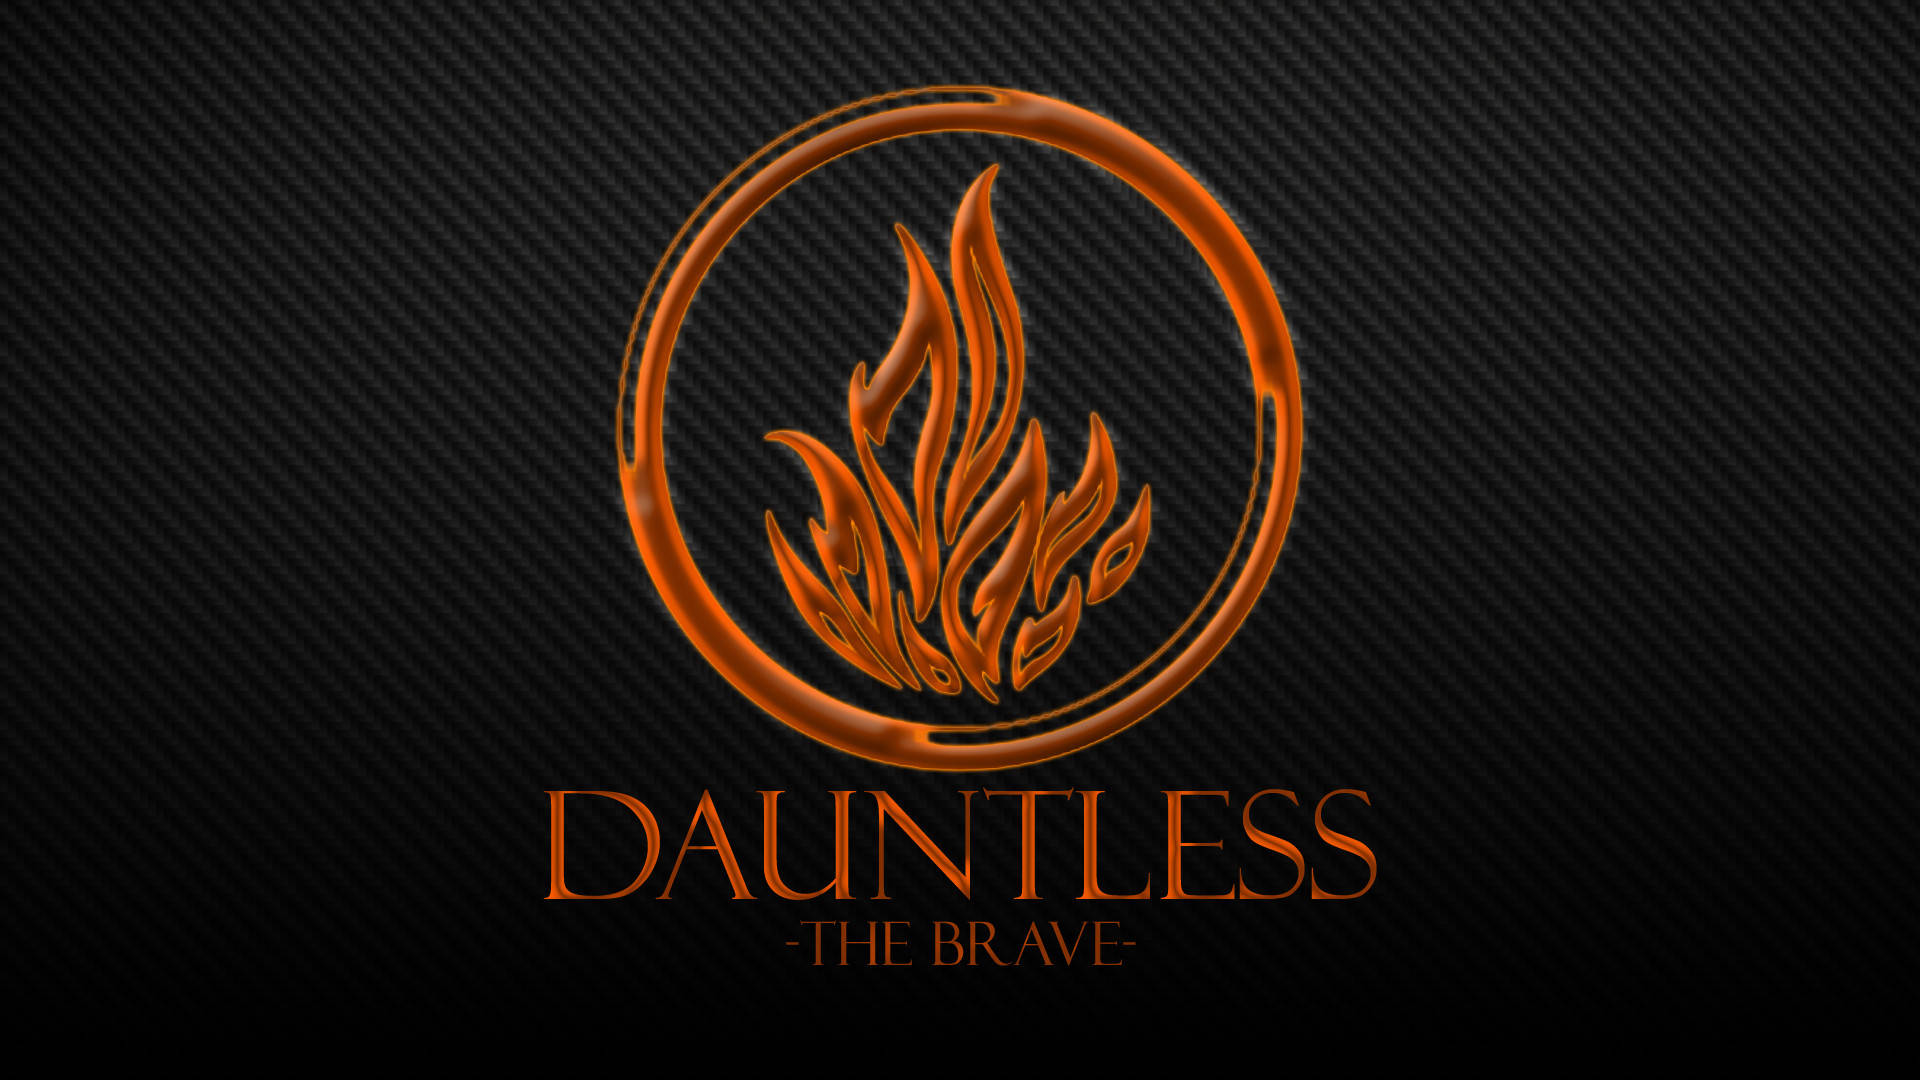 Dauntless Divergent Red Logo Background